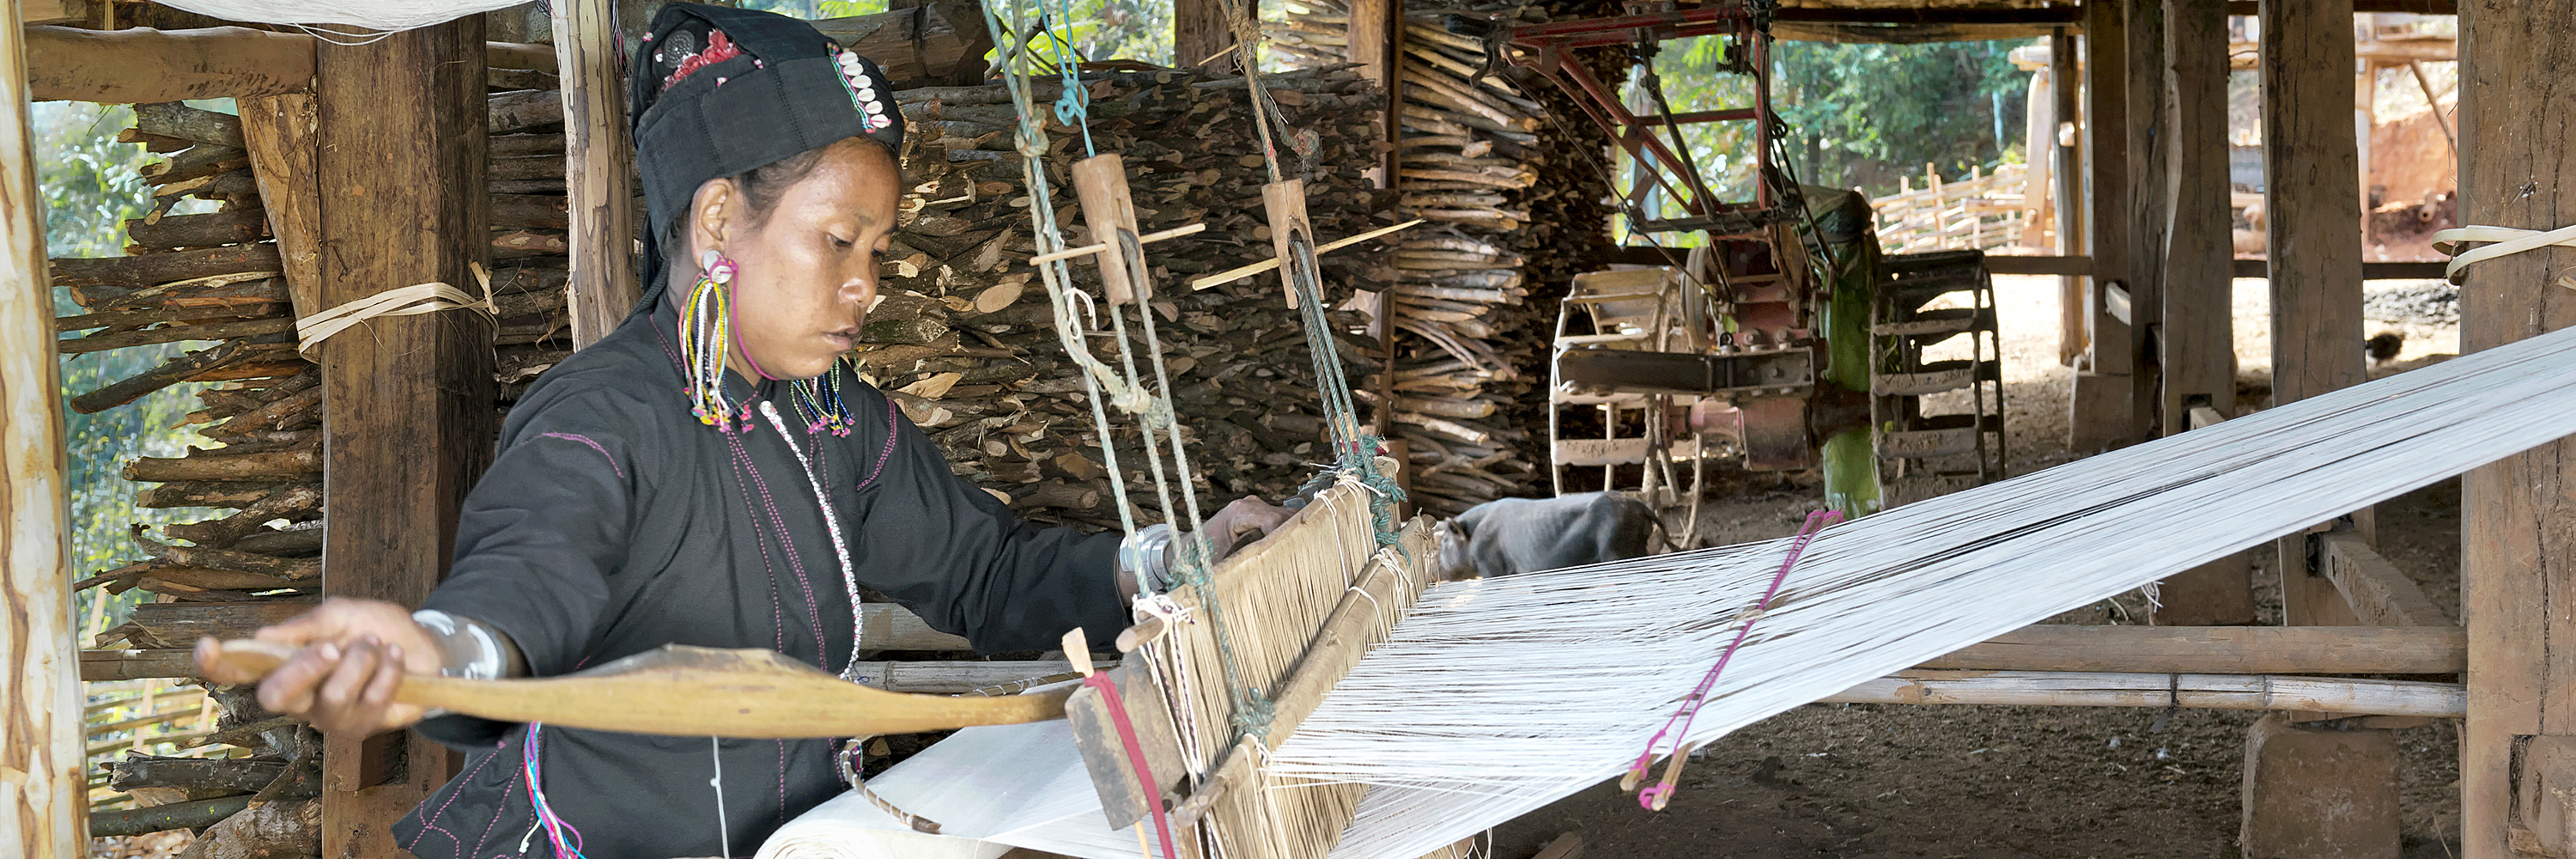 An tribe woman weaving cotton, Myanmar